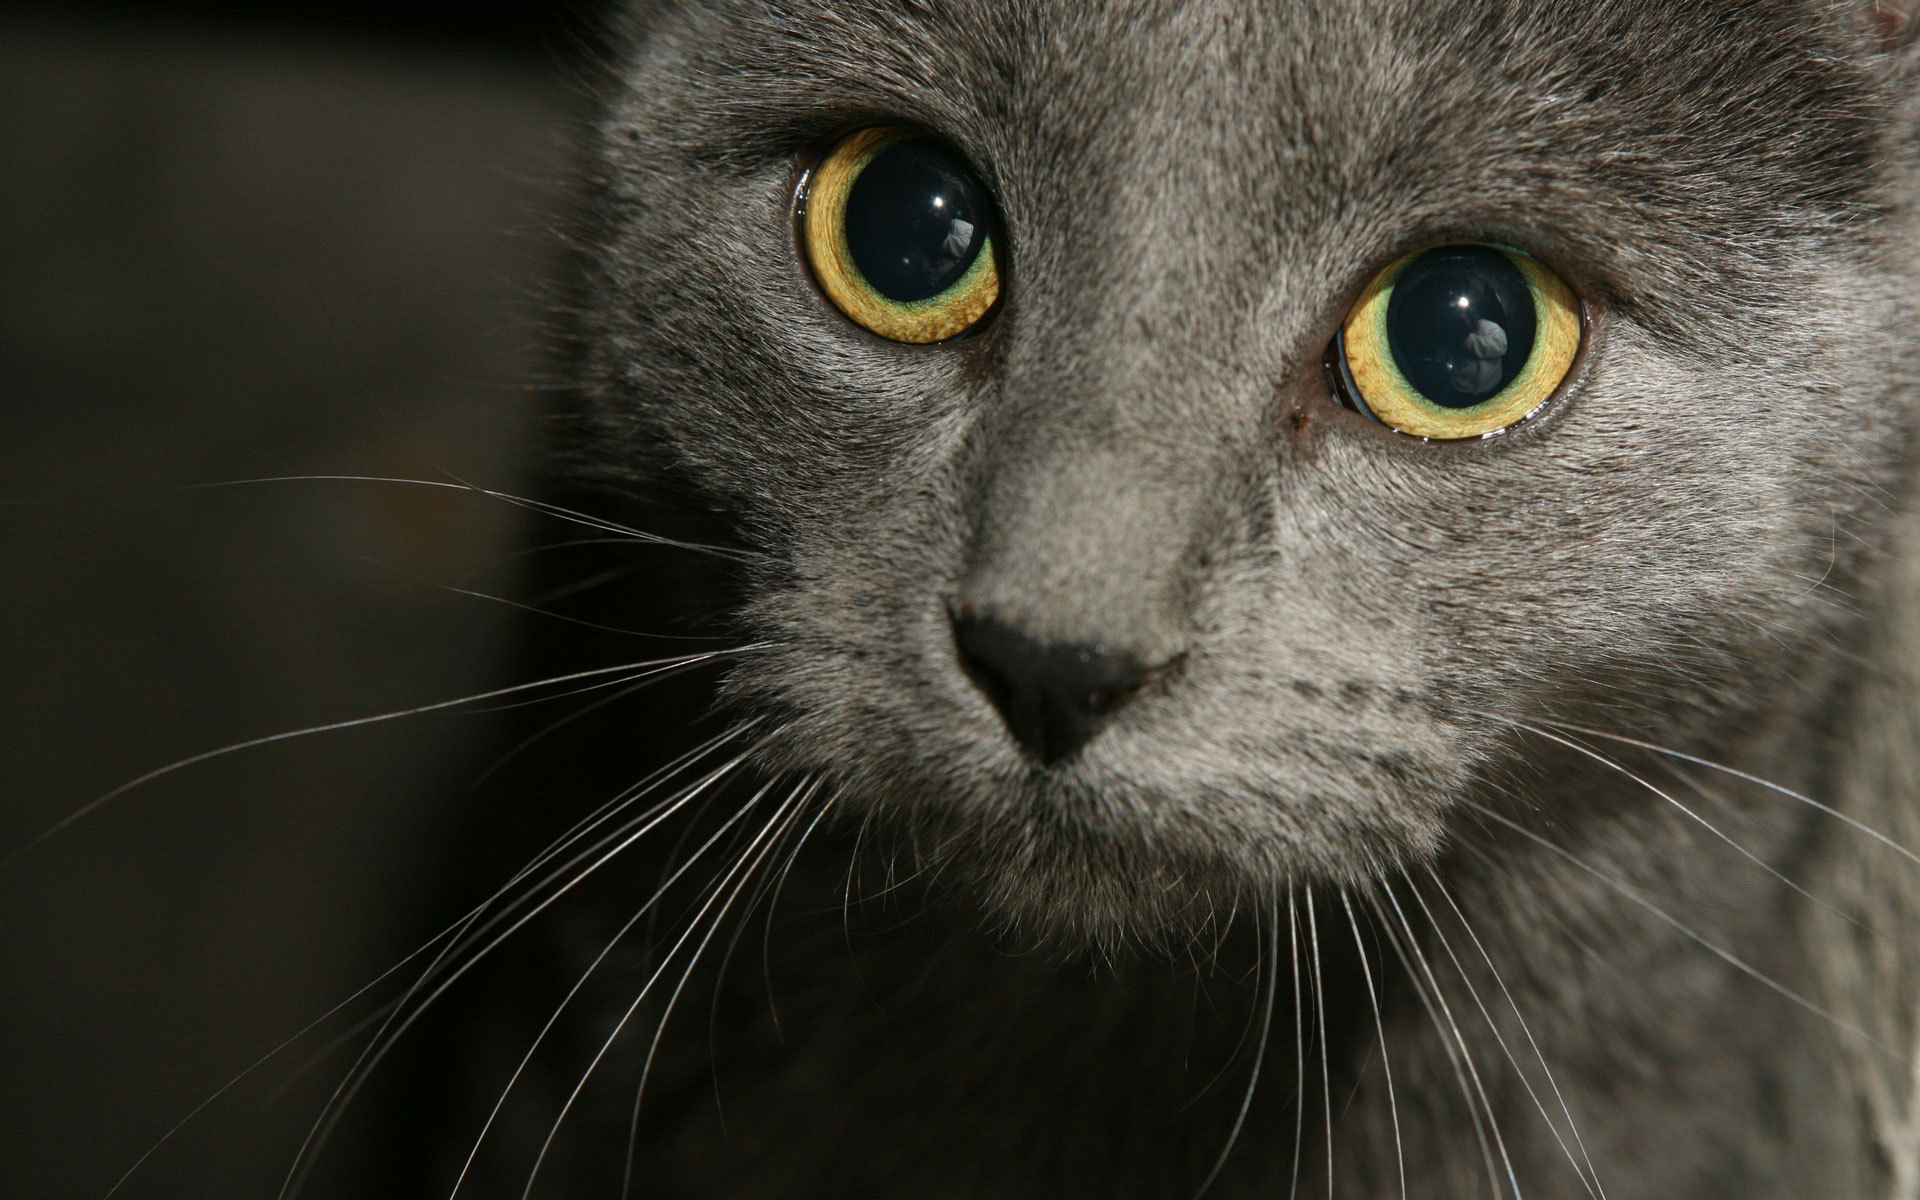 Картинки серых кошек. Русская голубая кошка вислоухая. Шартрез кот. Серый кот с желтыми глазами. Дымчатая кошка.